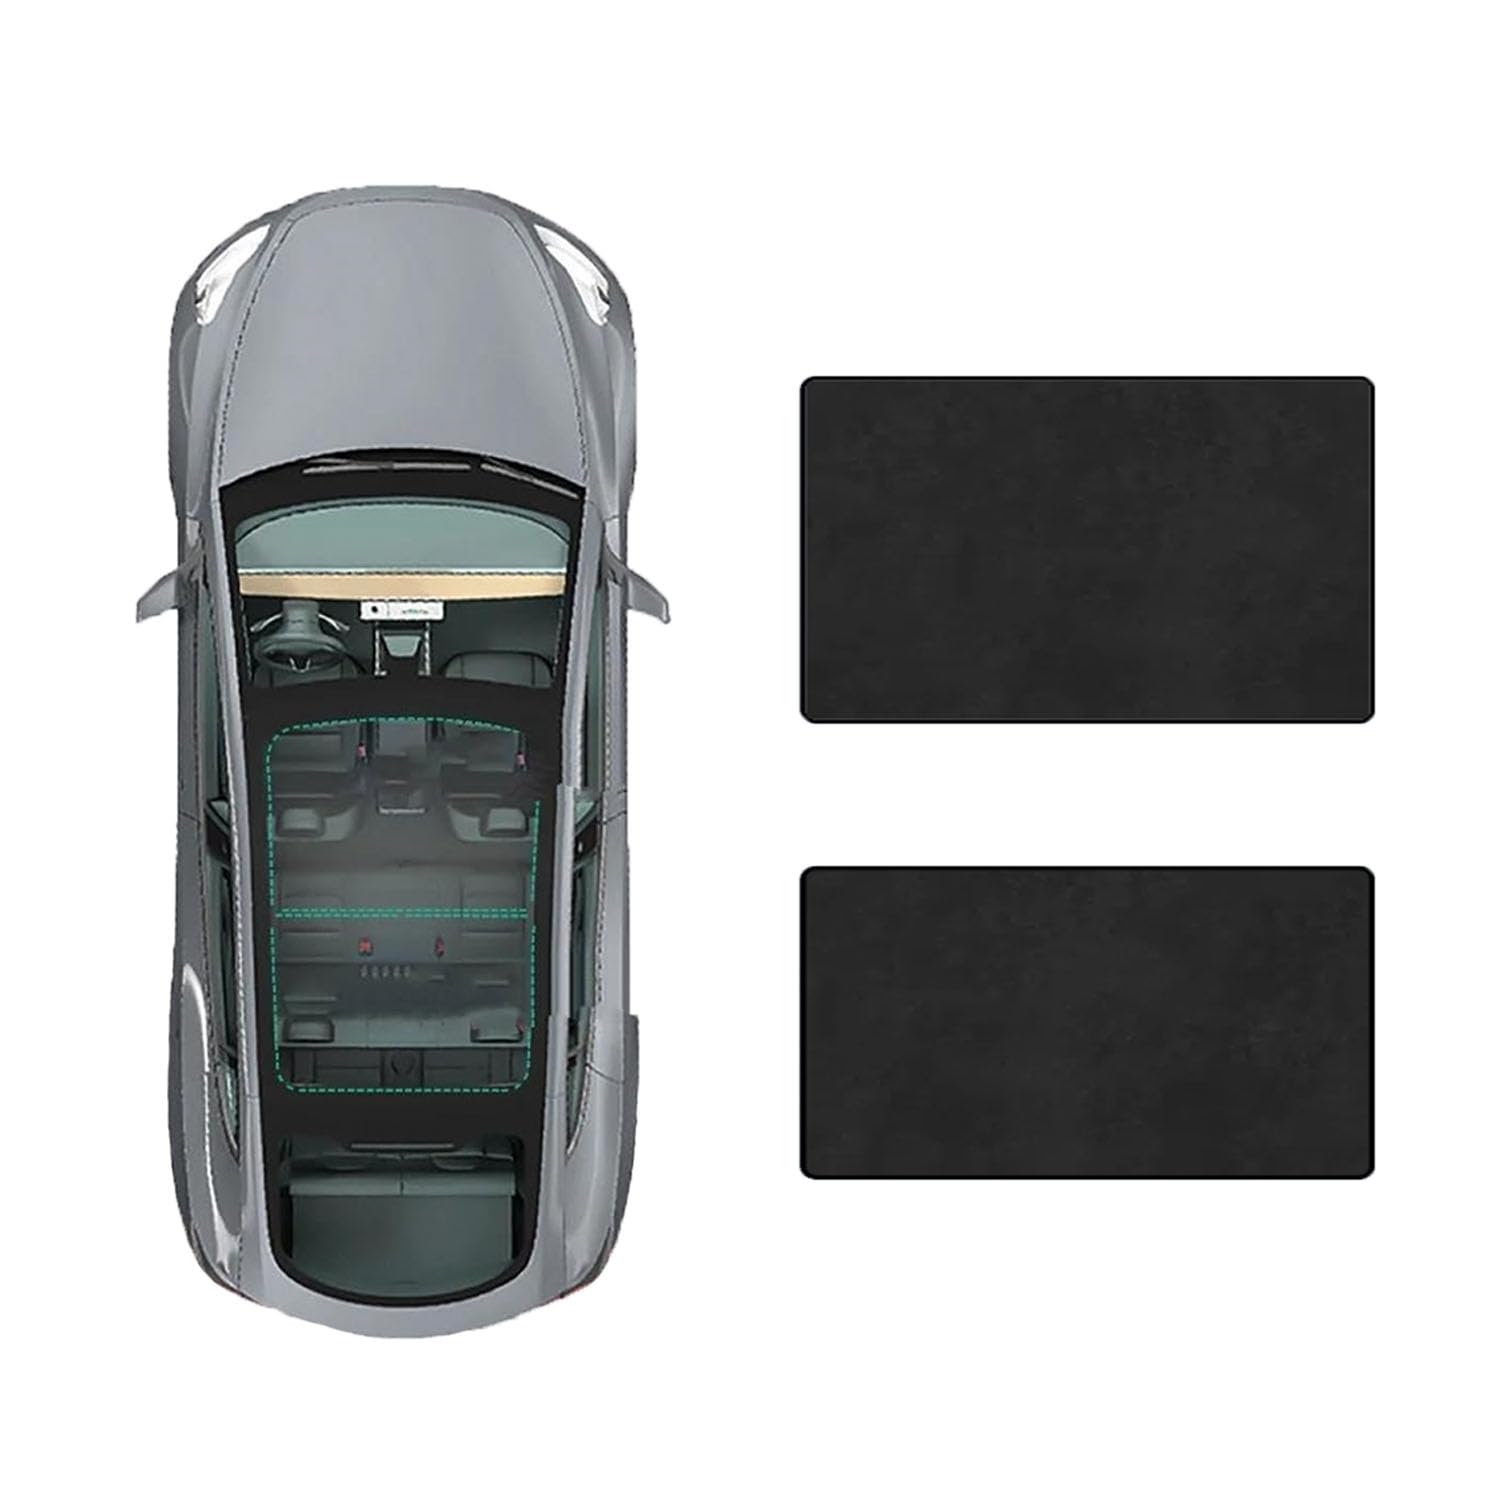 Für Mercedes Benz E-Class 2005-2009 Auto-Schiebedach-Beschattung,Dach Wärme Isolierung Anti-UV Visier Auto Zubehör,D-Black Suede von ANRAM